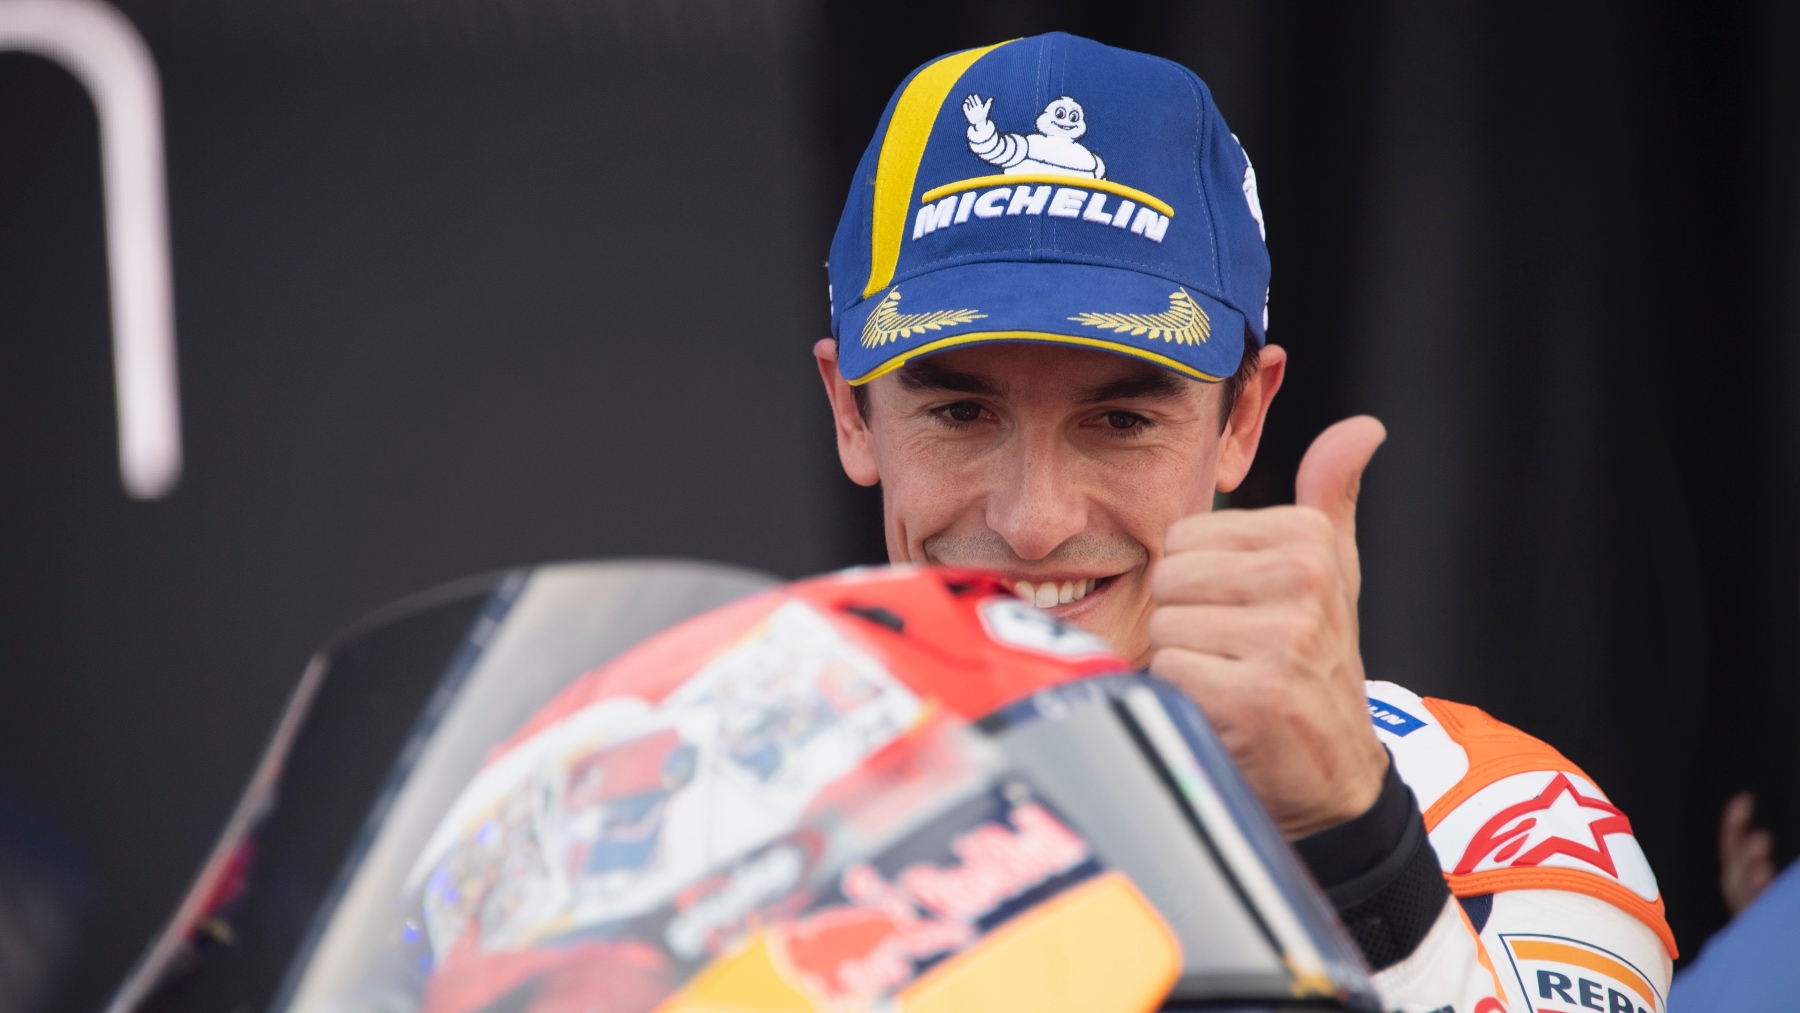 Marc Márquez, en su última carrera con Honda. (Getty)